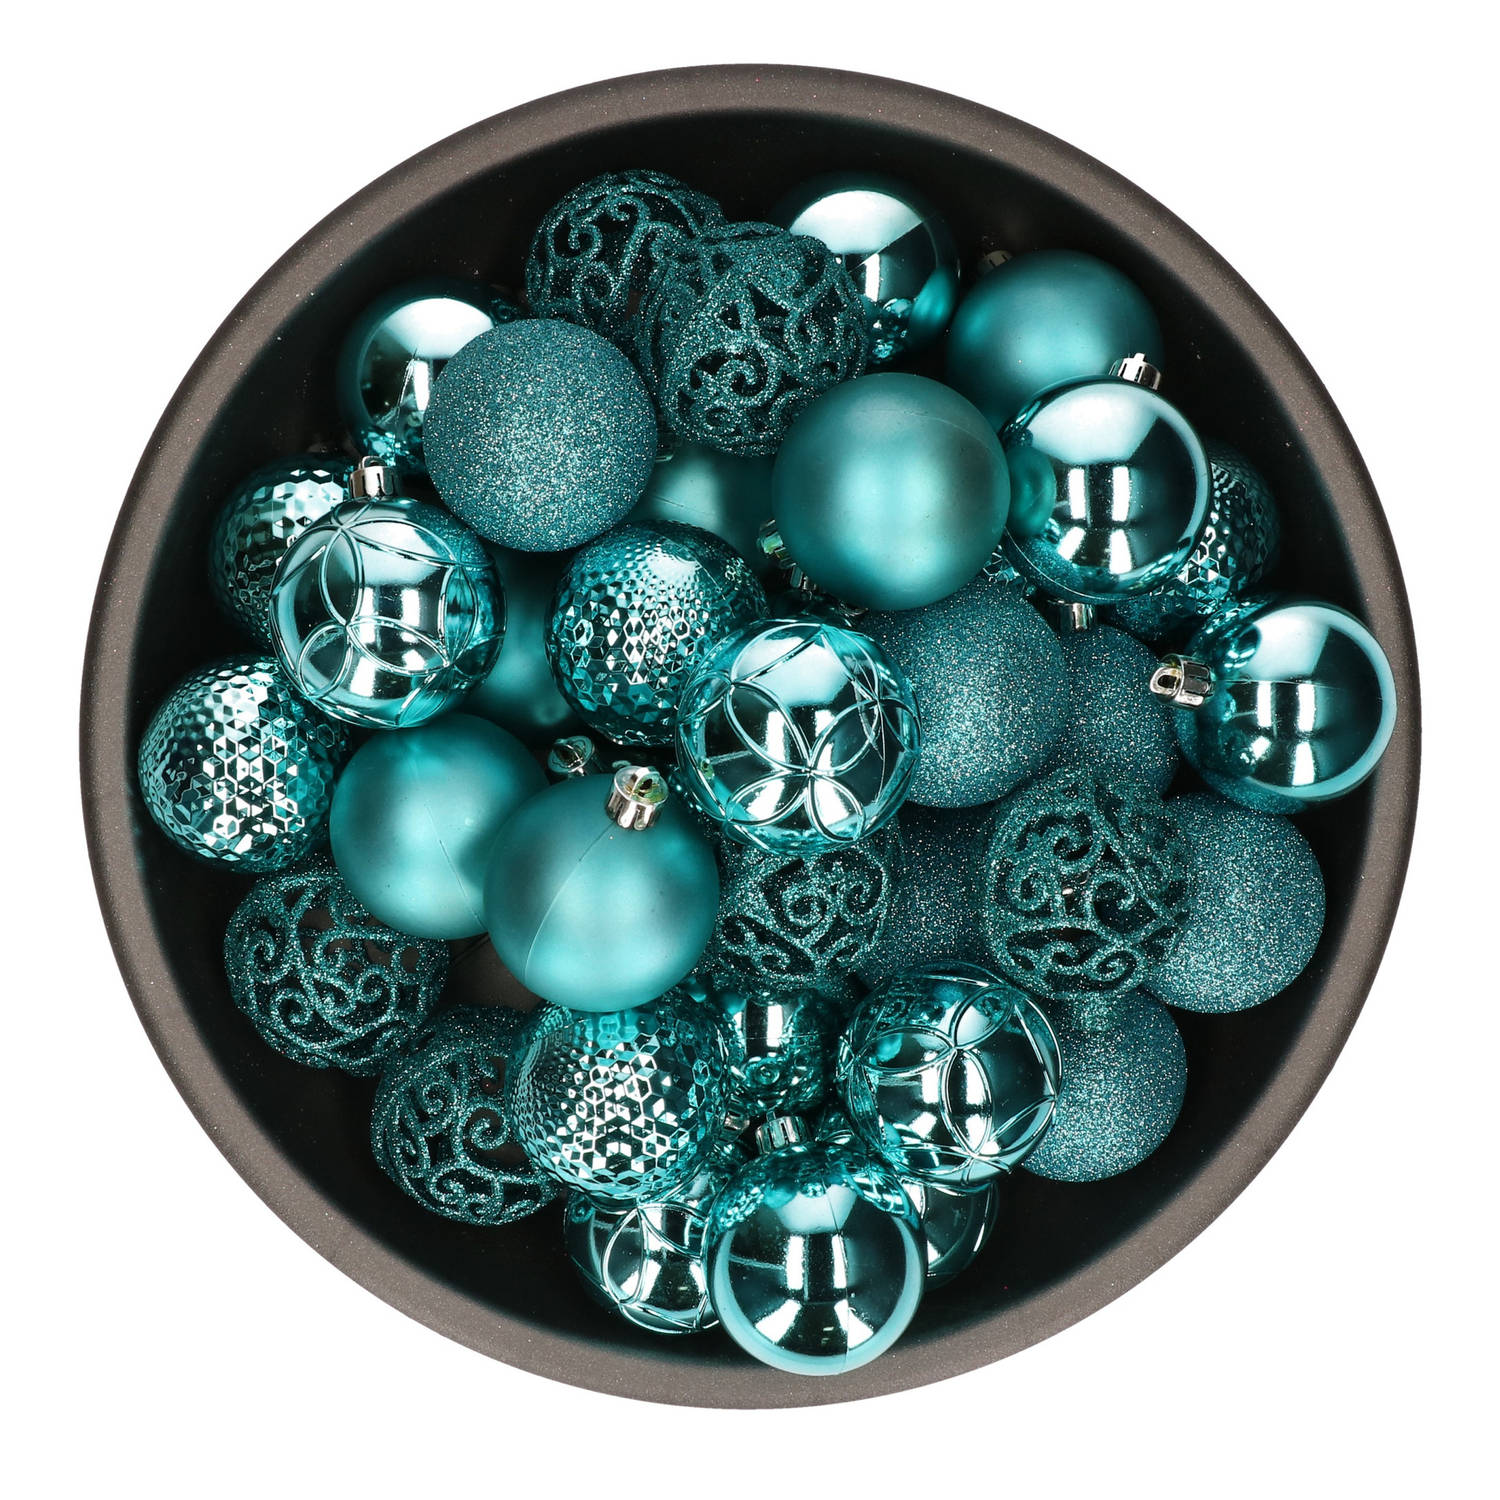 37x Stuks Kunststof Kerstballen Turquoise Blauw 6 Cm Glans-mat-glitter Mix Kerstbal